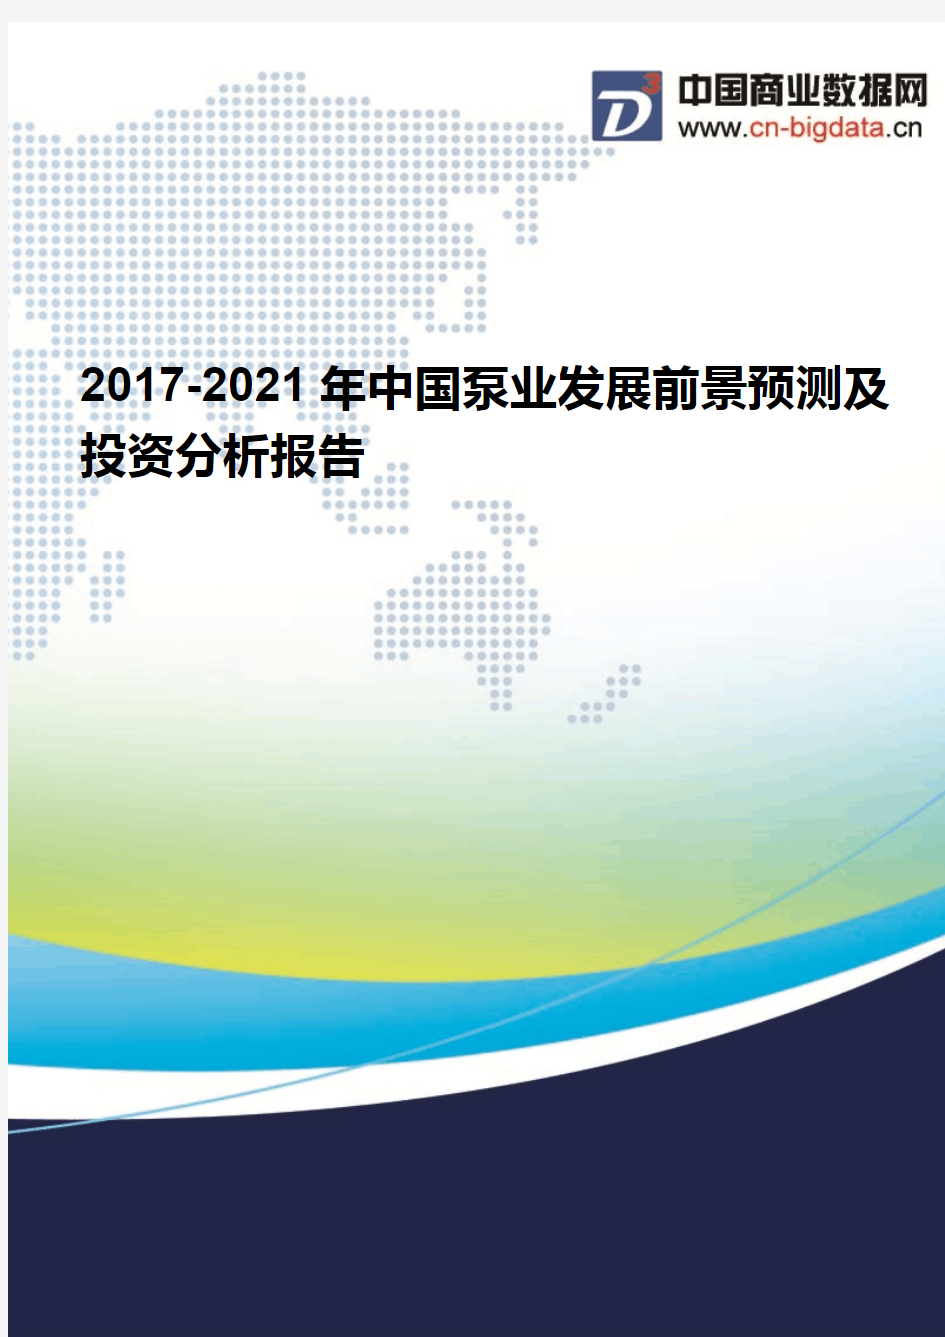 (2017版目录)2017-2021年中国泵业发展前景预测及投资分析报告